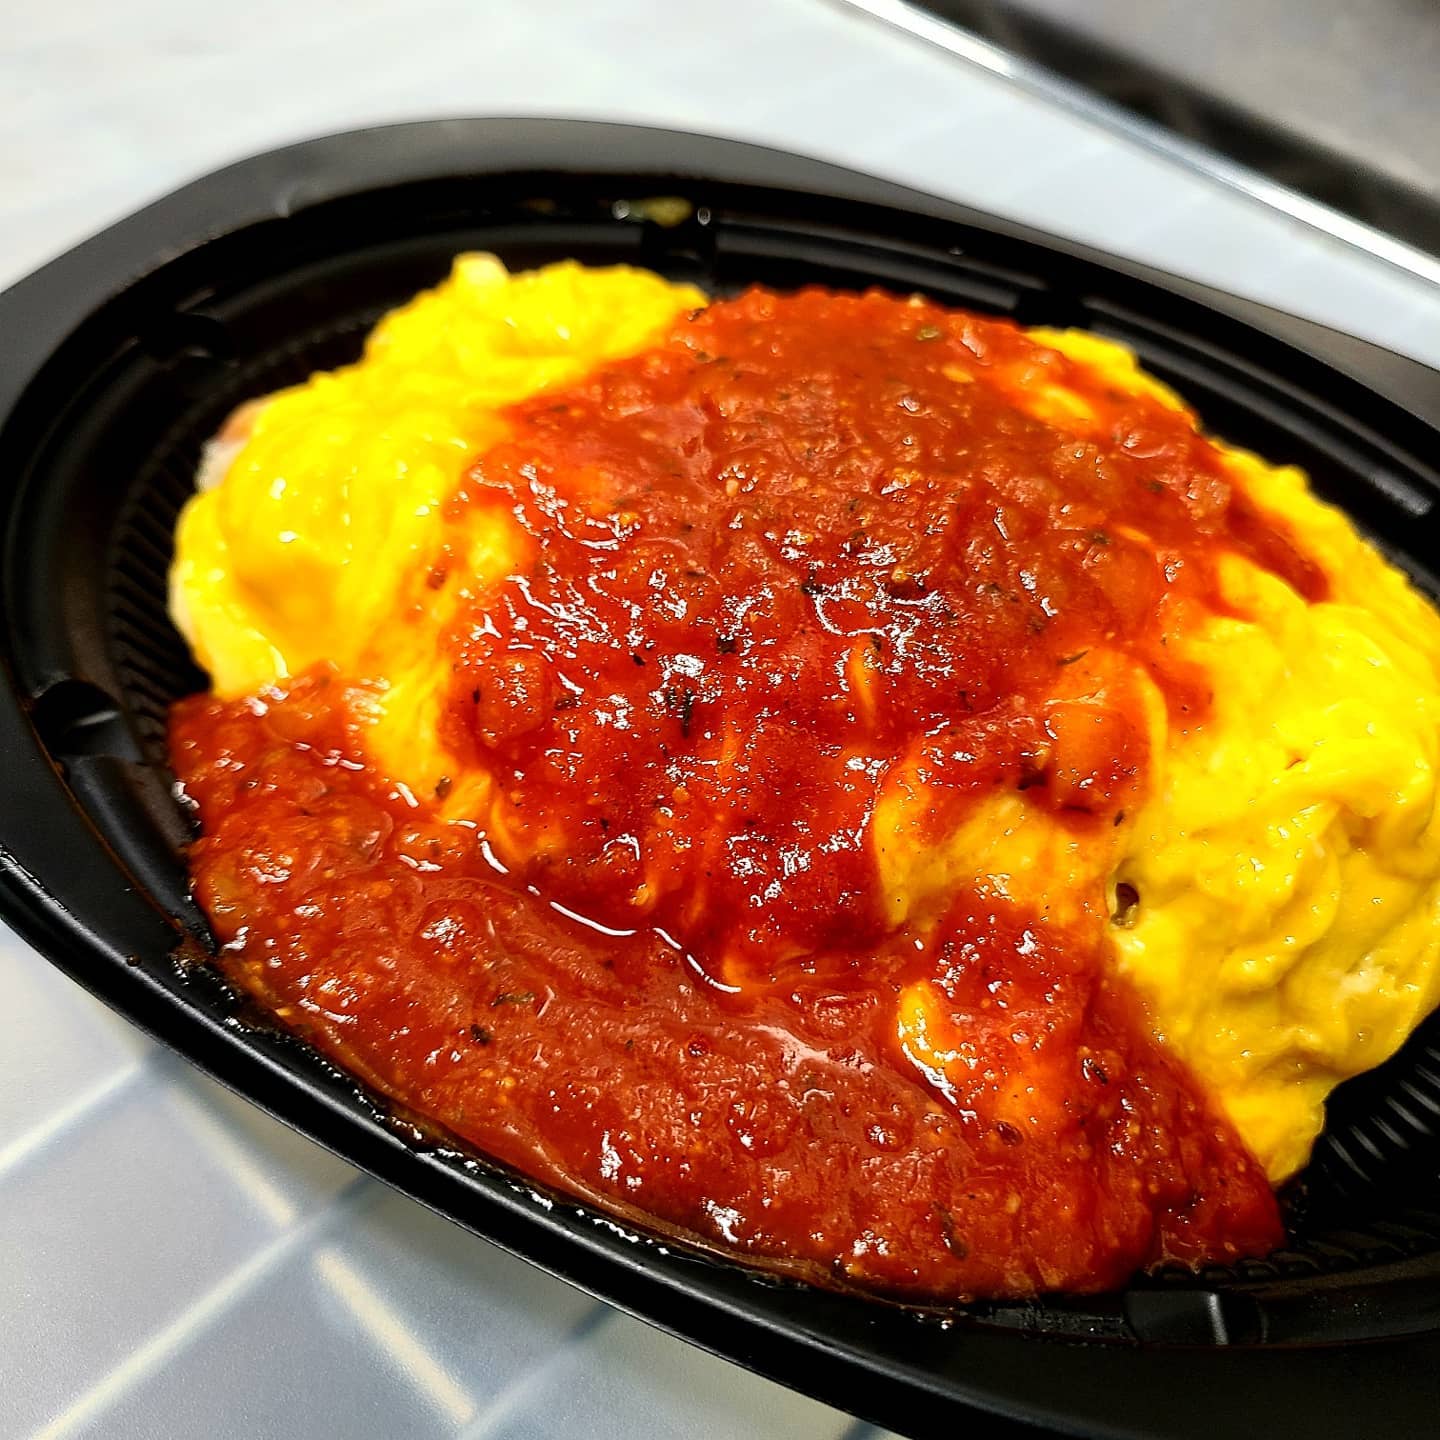 ◎今日のお弁当

・オムライス(トマトソース)
・大きなシャケ弁当
・ソースカツ丼
・鶏の照り焼き弁当
・ローストビーフ丼